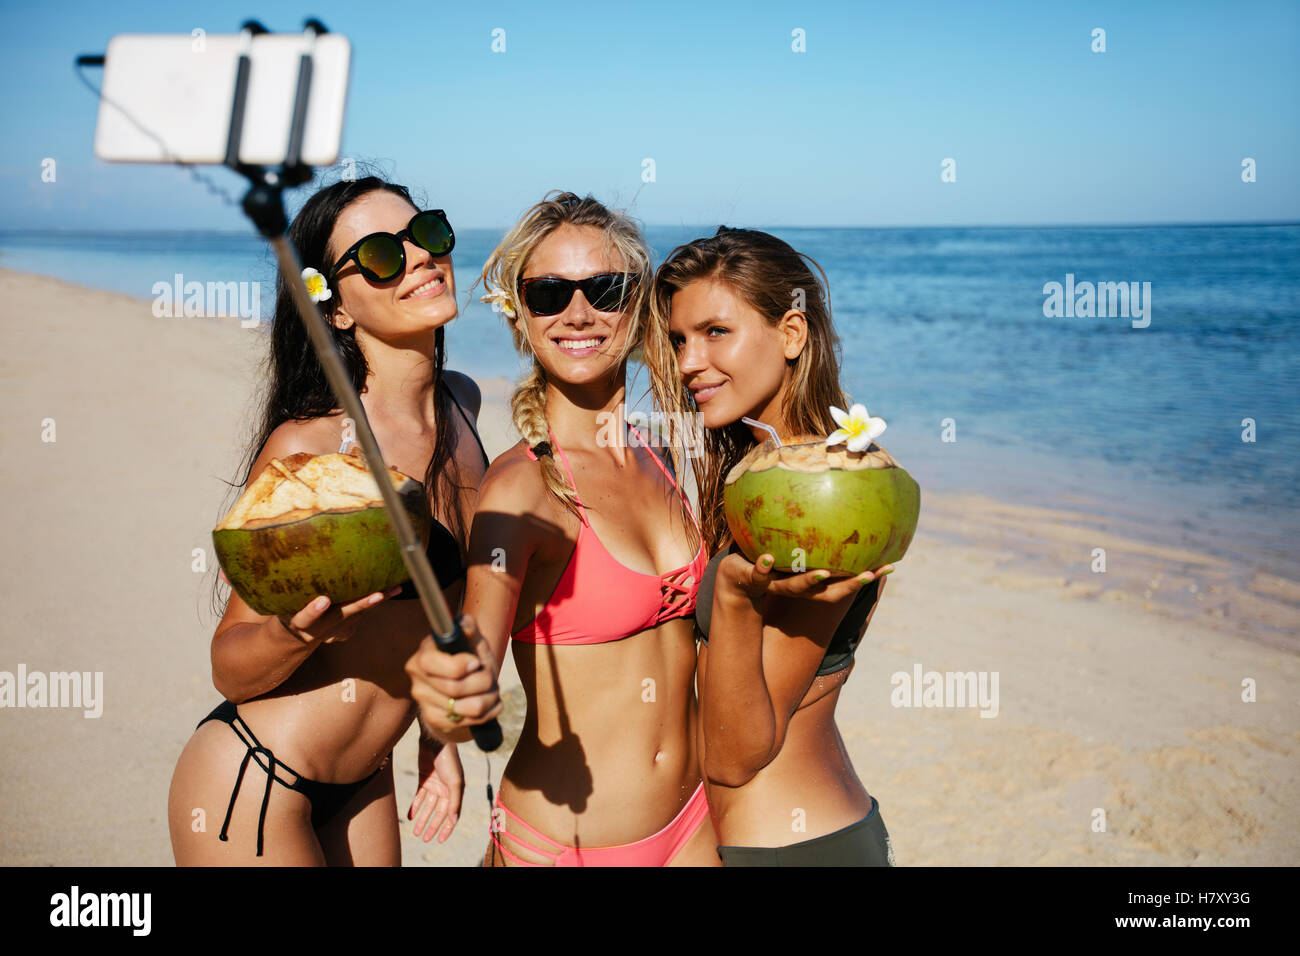 Gruppe der jungen Frau hält Kokosnüsse und nehmen Selfie am Strand. Drei junge Frauen im Badeanzug am Strand nehmen selbst por Stockfoto